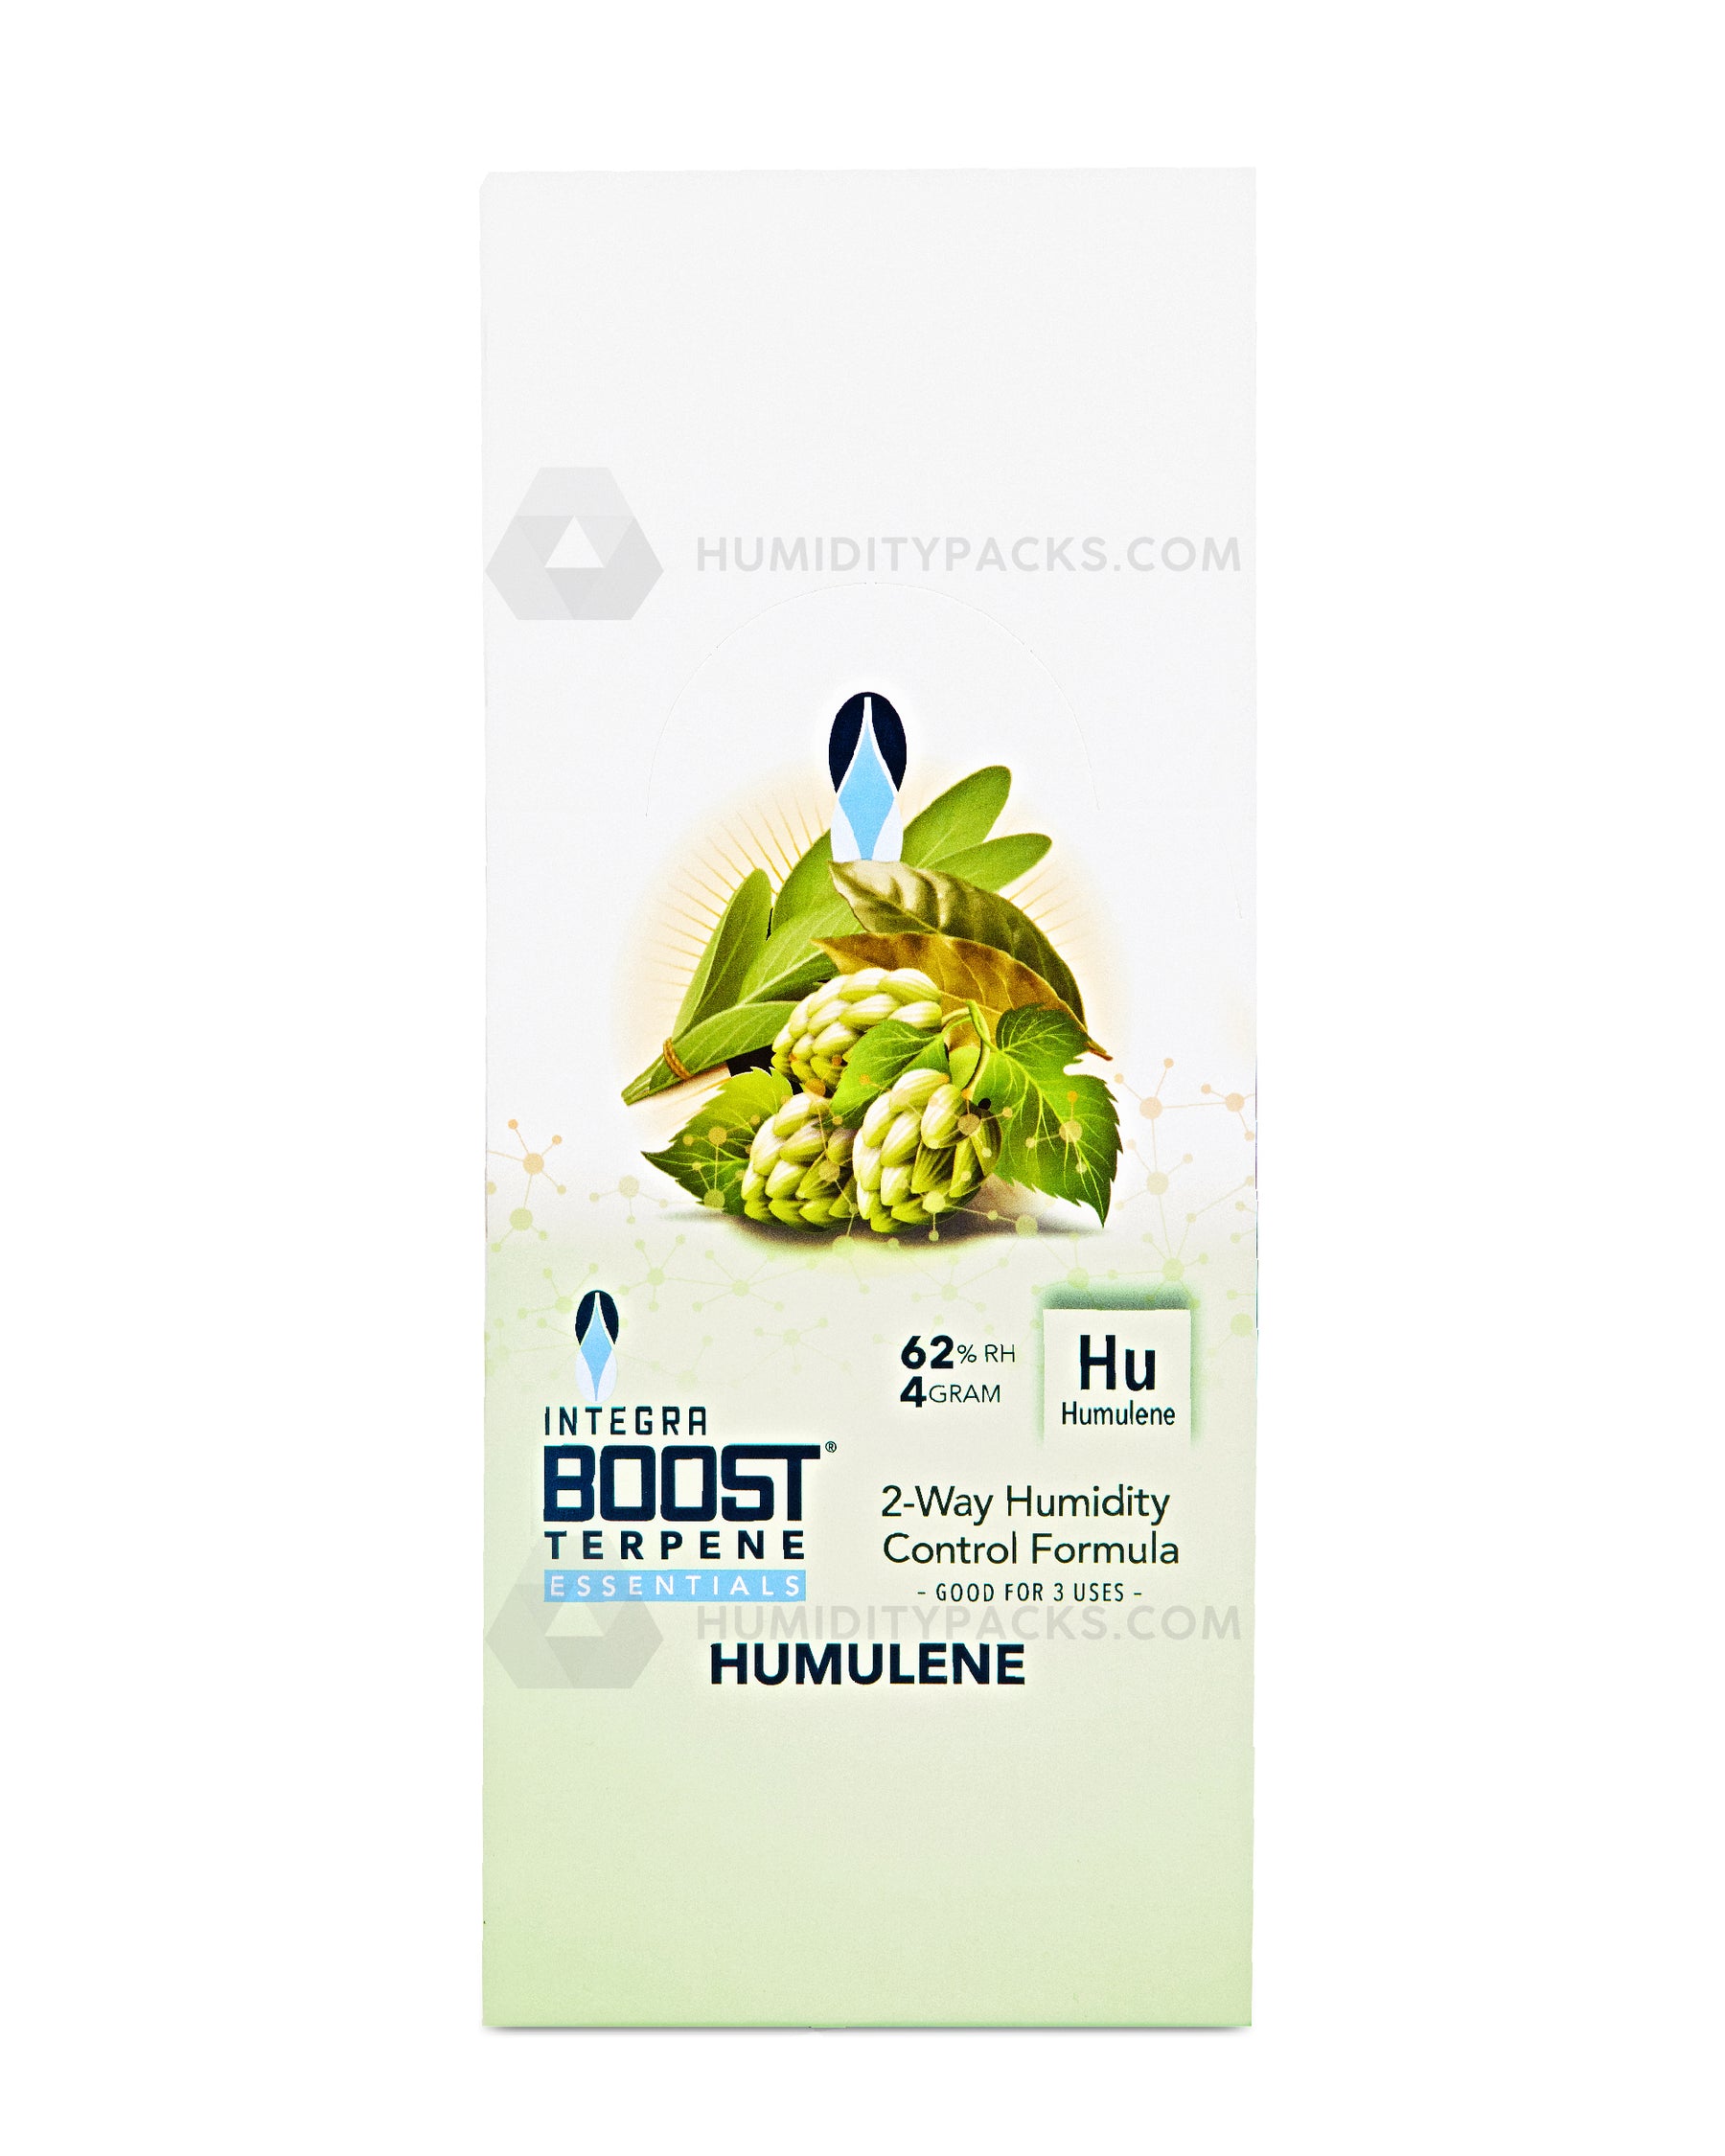 Integra Boost 4 Gram 2-Way Terpene Essentials Humulene Humidity Packs (62%) 48-Box Humidity Packs - 8